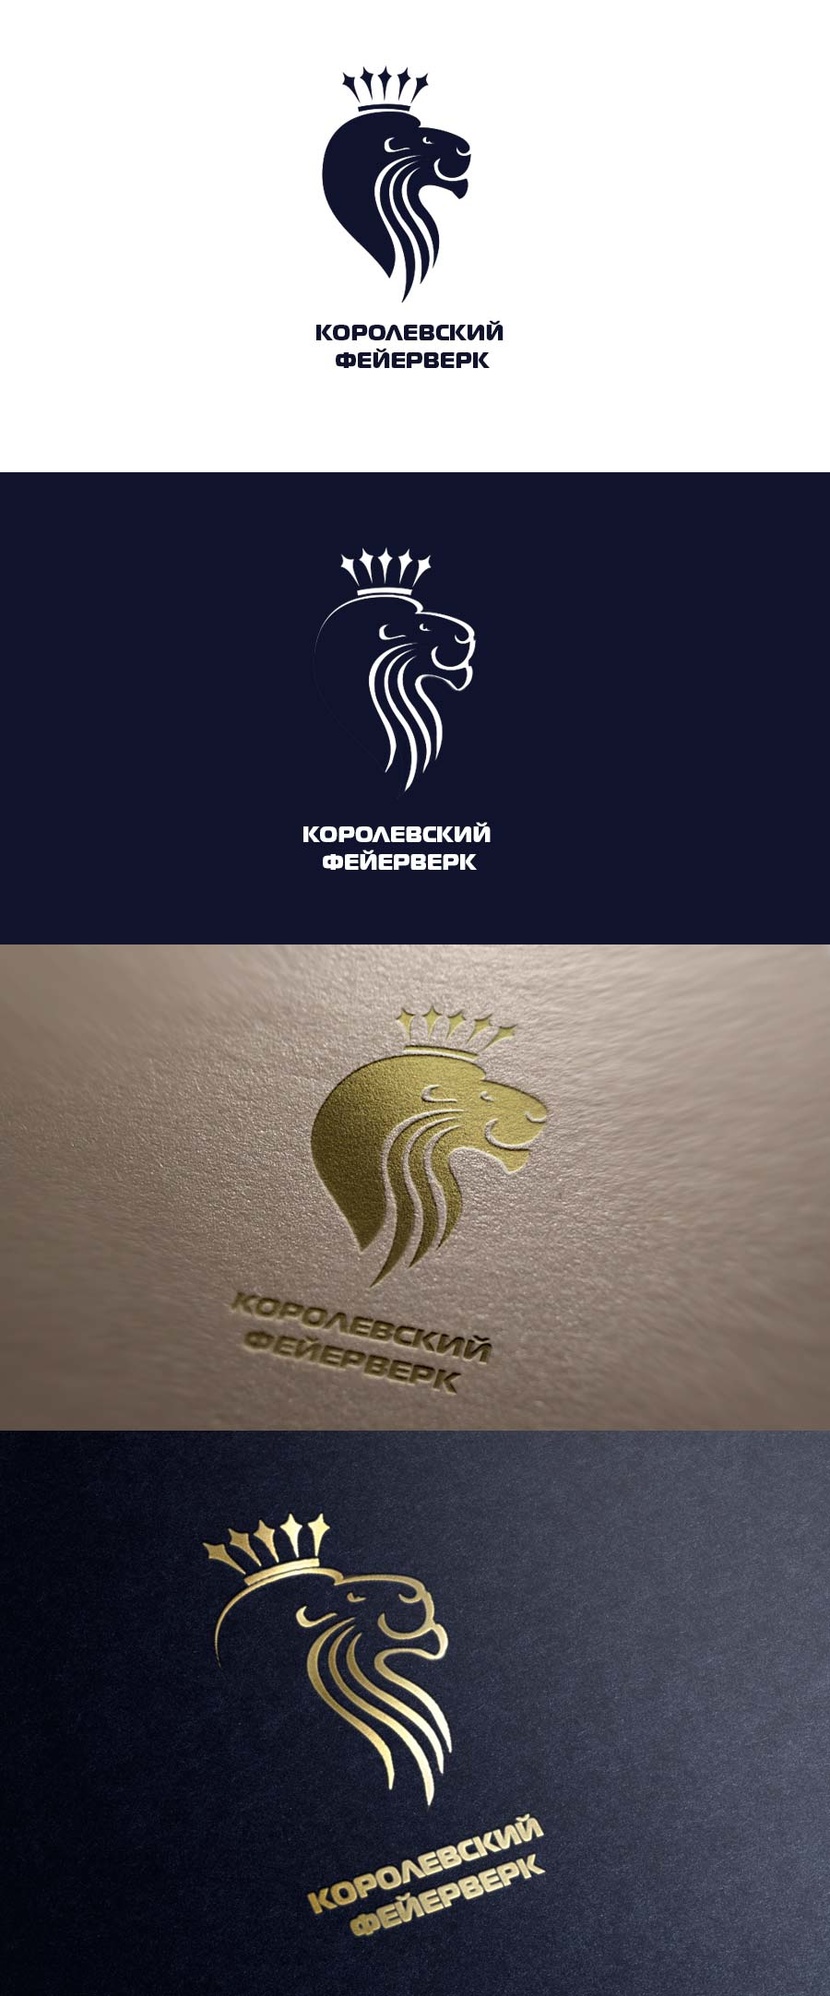 Разработка логотипа компании "Королевский фейерверк"  -  автор Павел Талпа